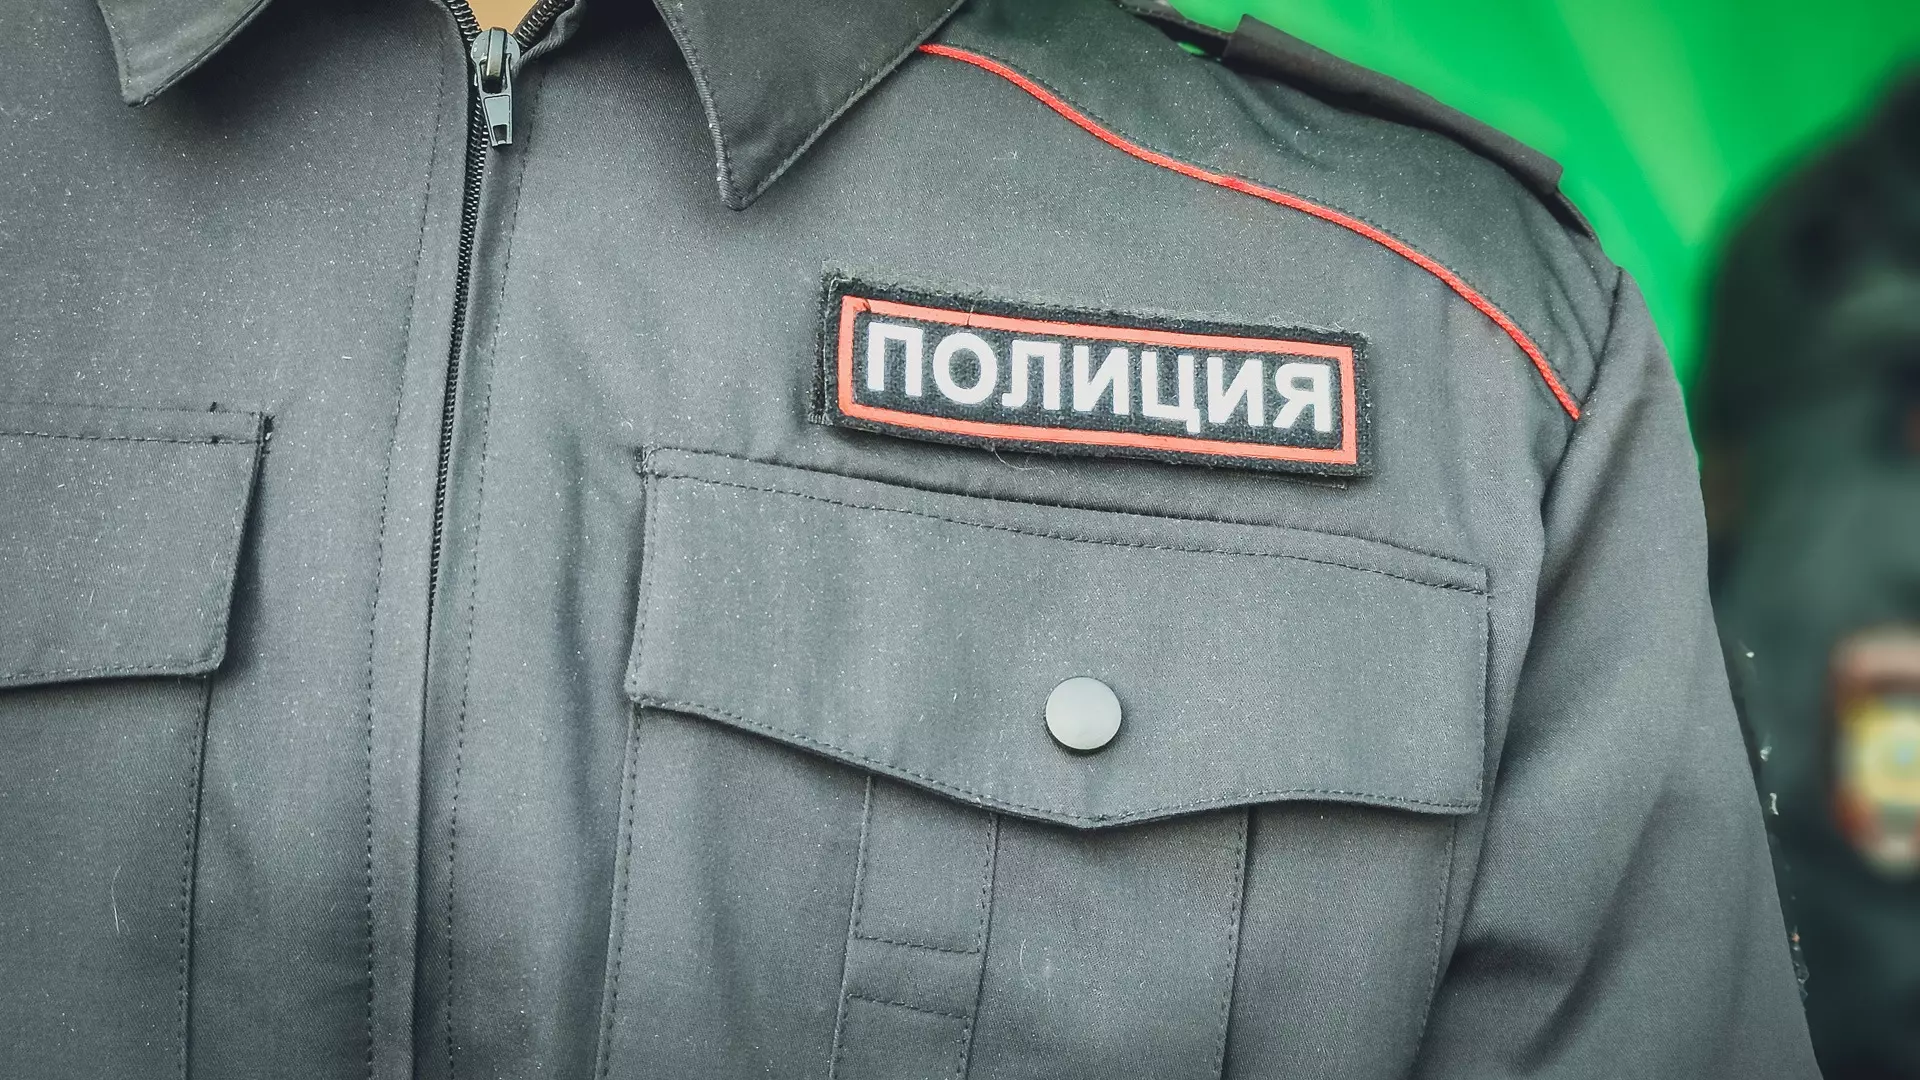 В Сургуте сотруднику органов внутренних дел предлагают зарплату в 100 тысяч рублей